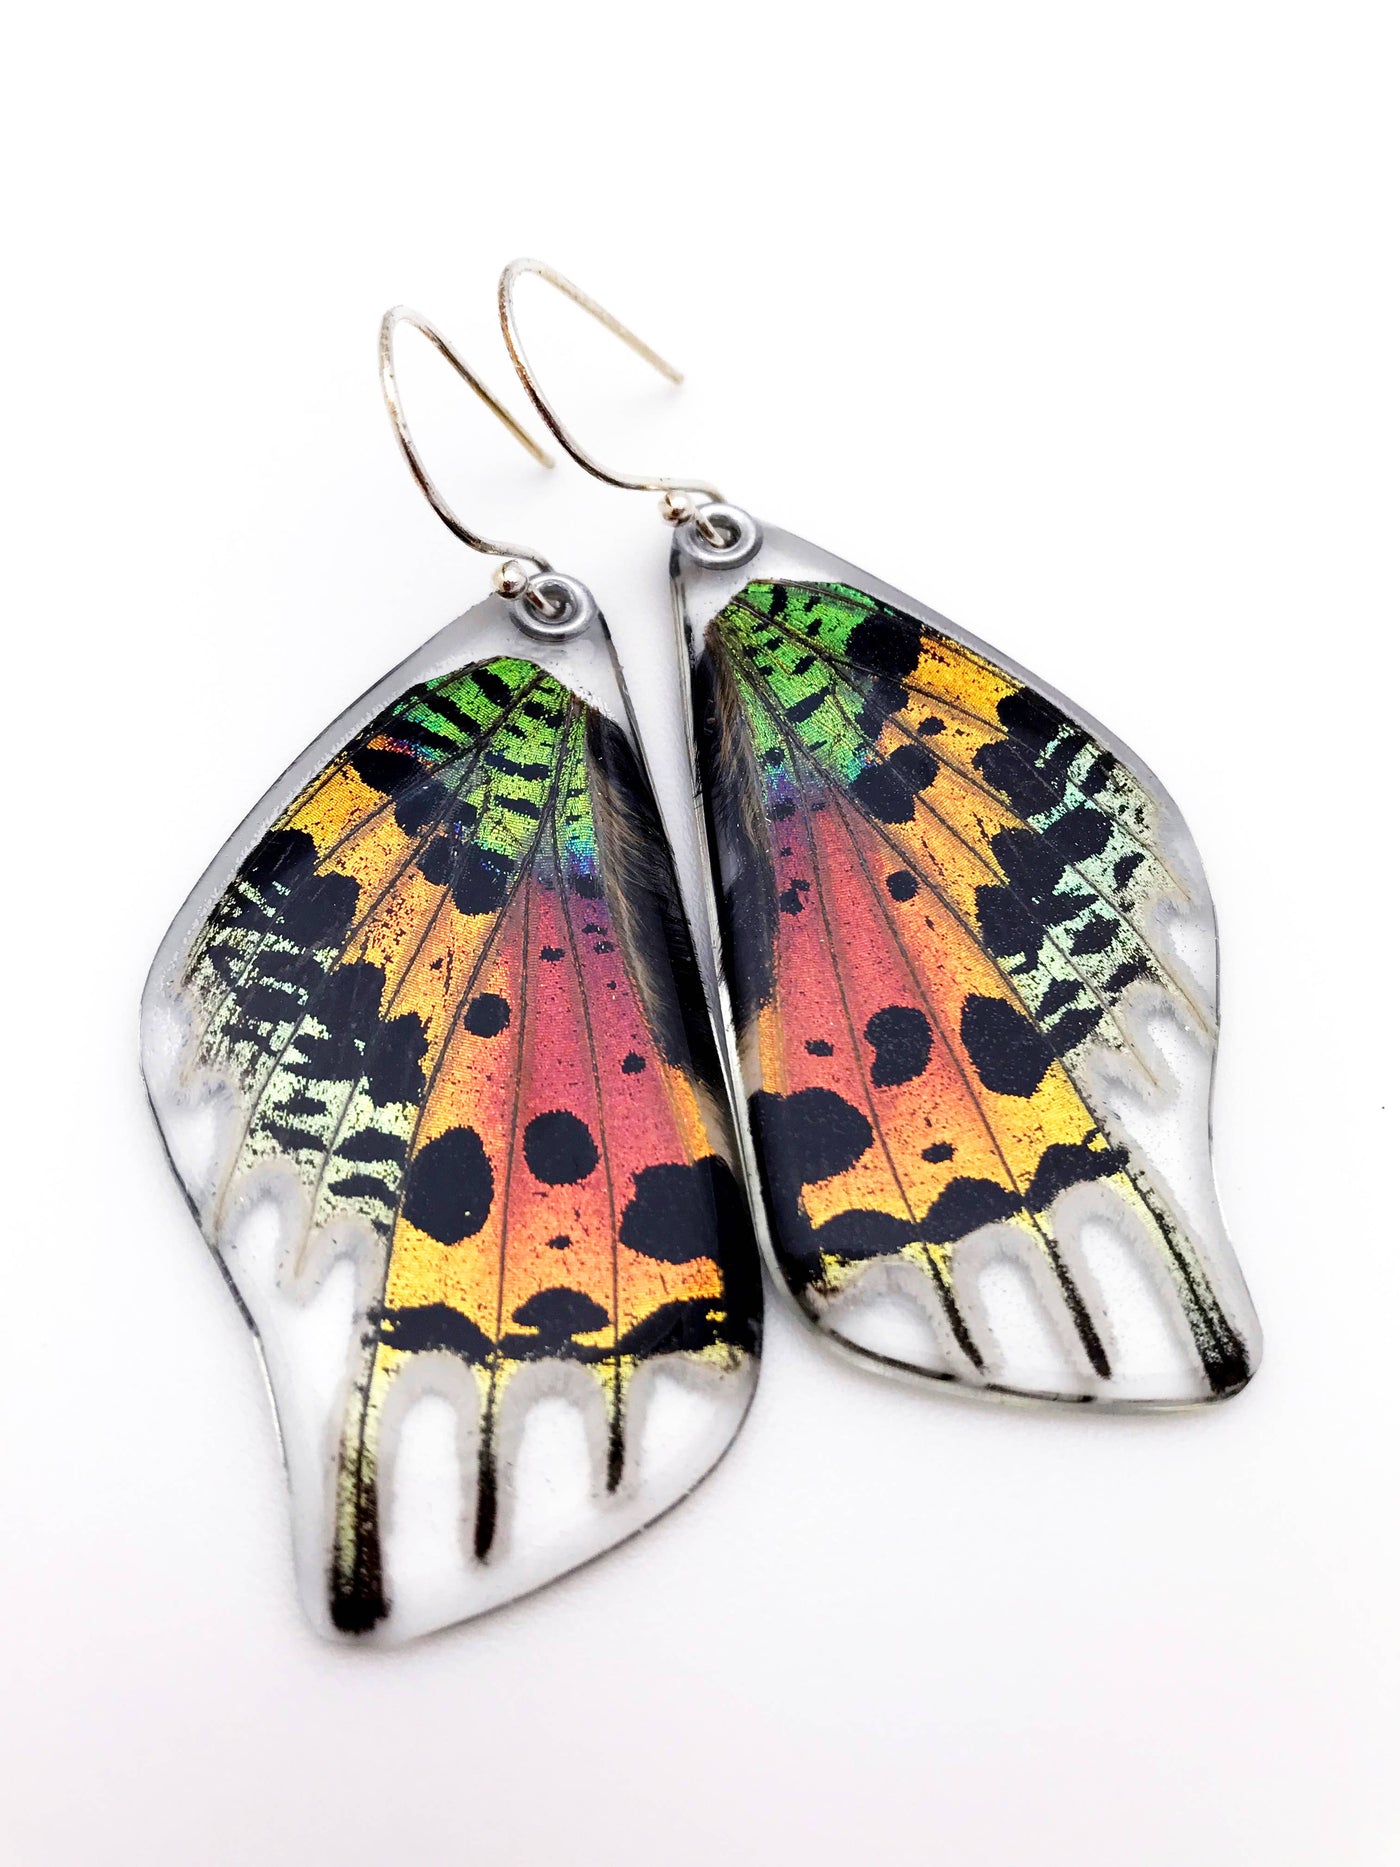 Sunset Moth Earrings, Bottom wing